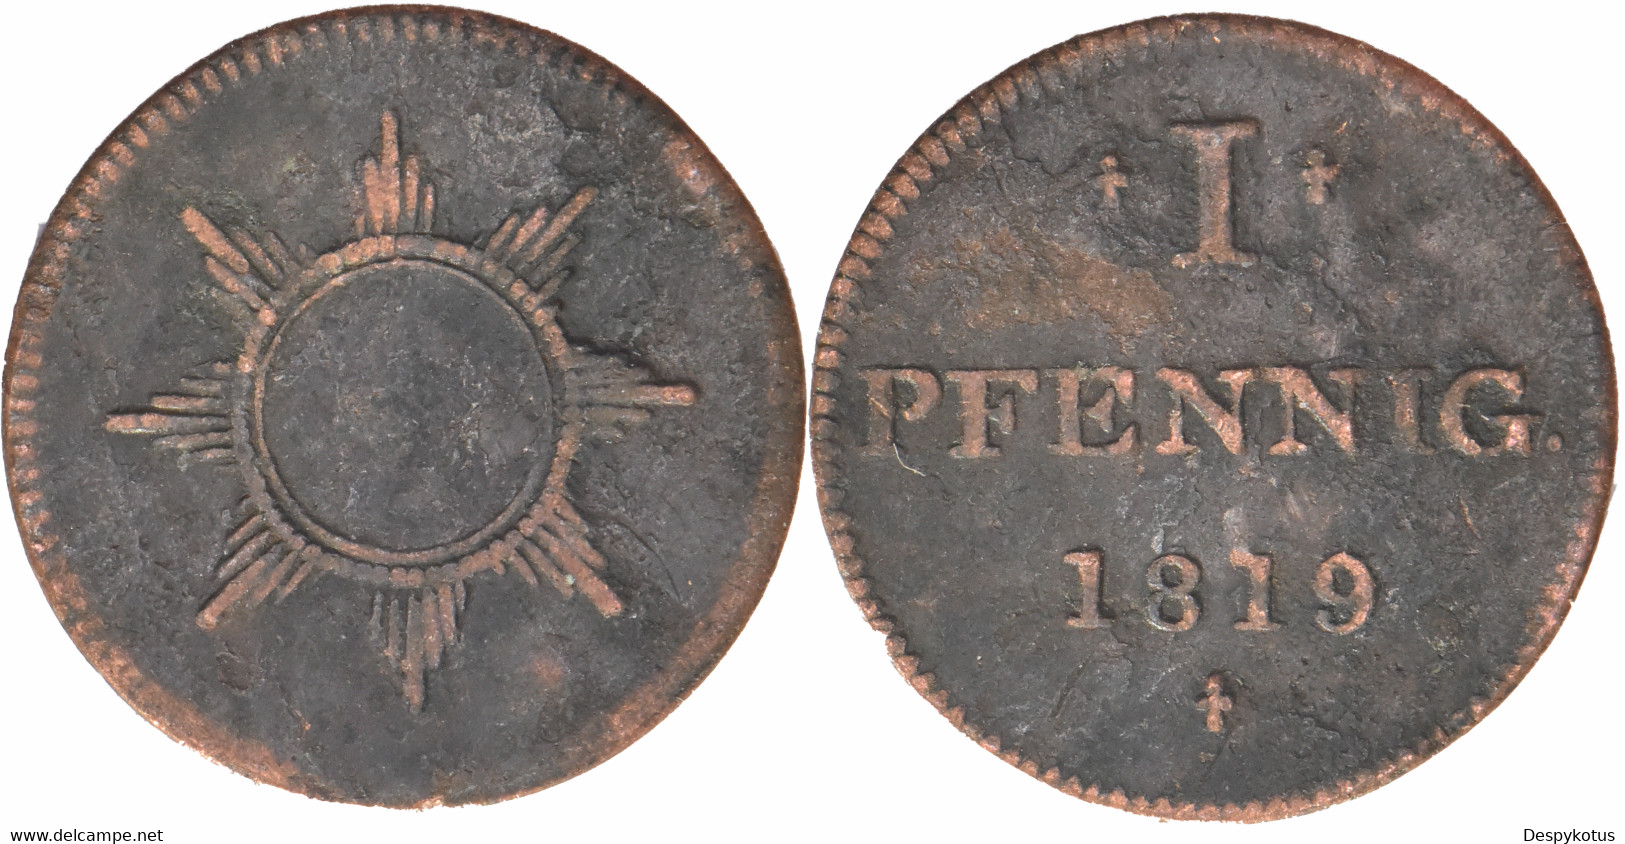 Allemagne - Ville Libre Impériale De Francfort - 1819 - 1 Pfennig - B086 - Taler & Doppeltaler